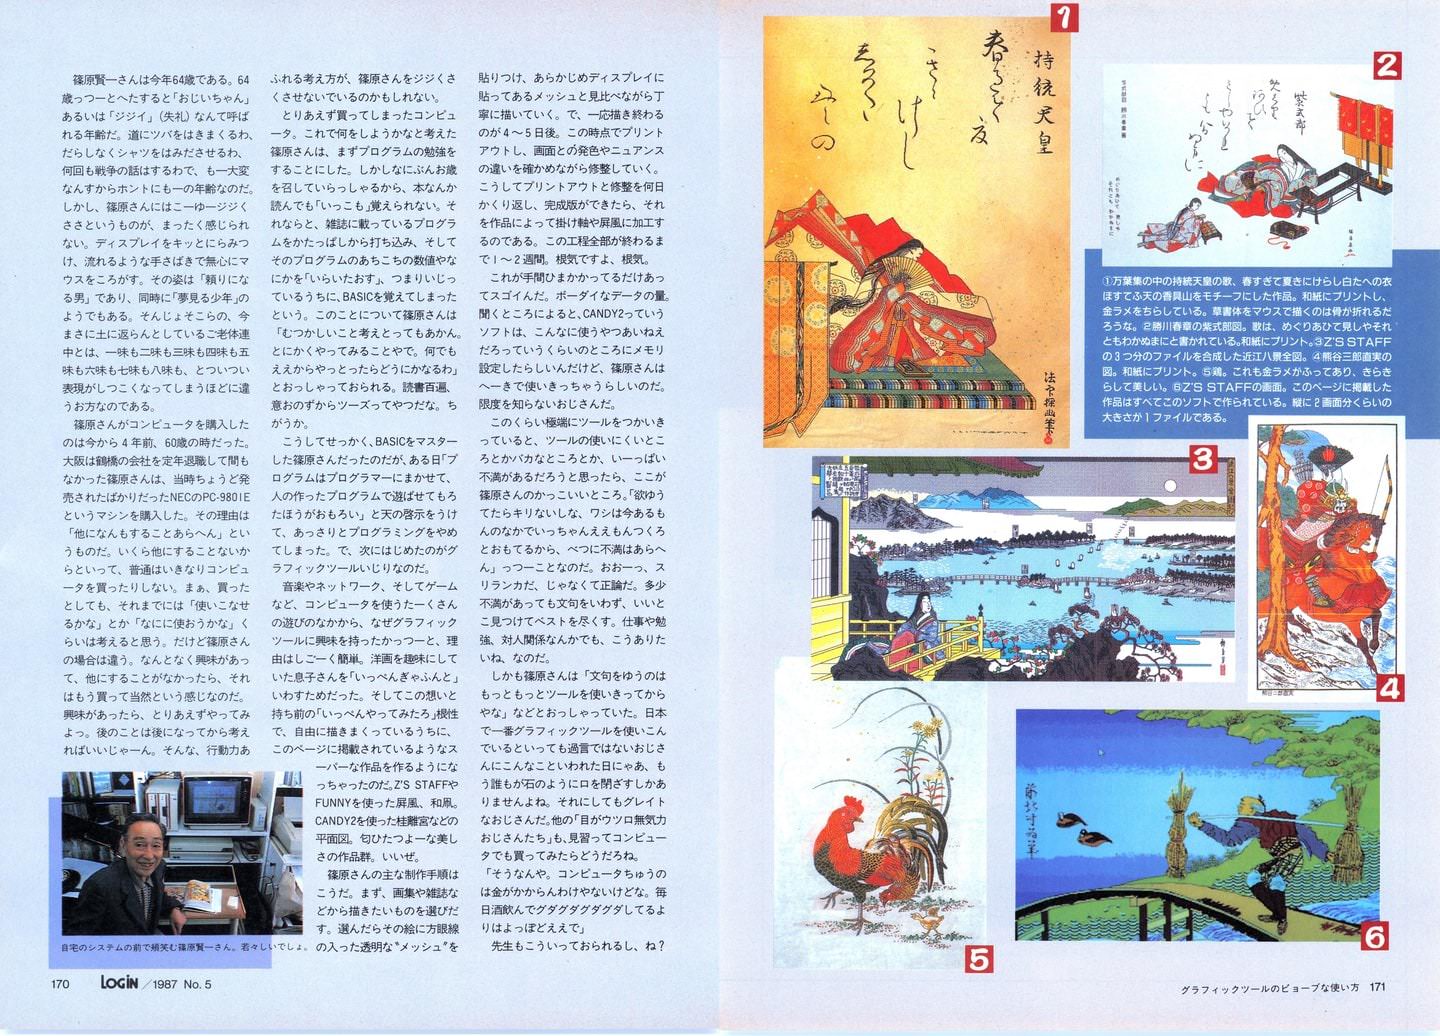 Kenichi Shinohara's pixel art Ukiyo-e, page 3 & 4